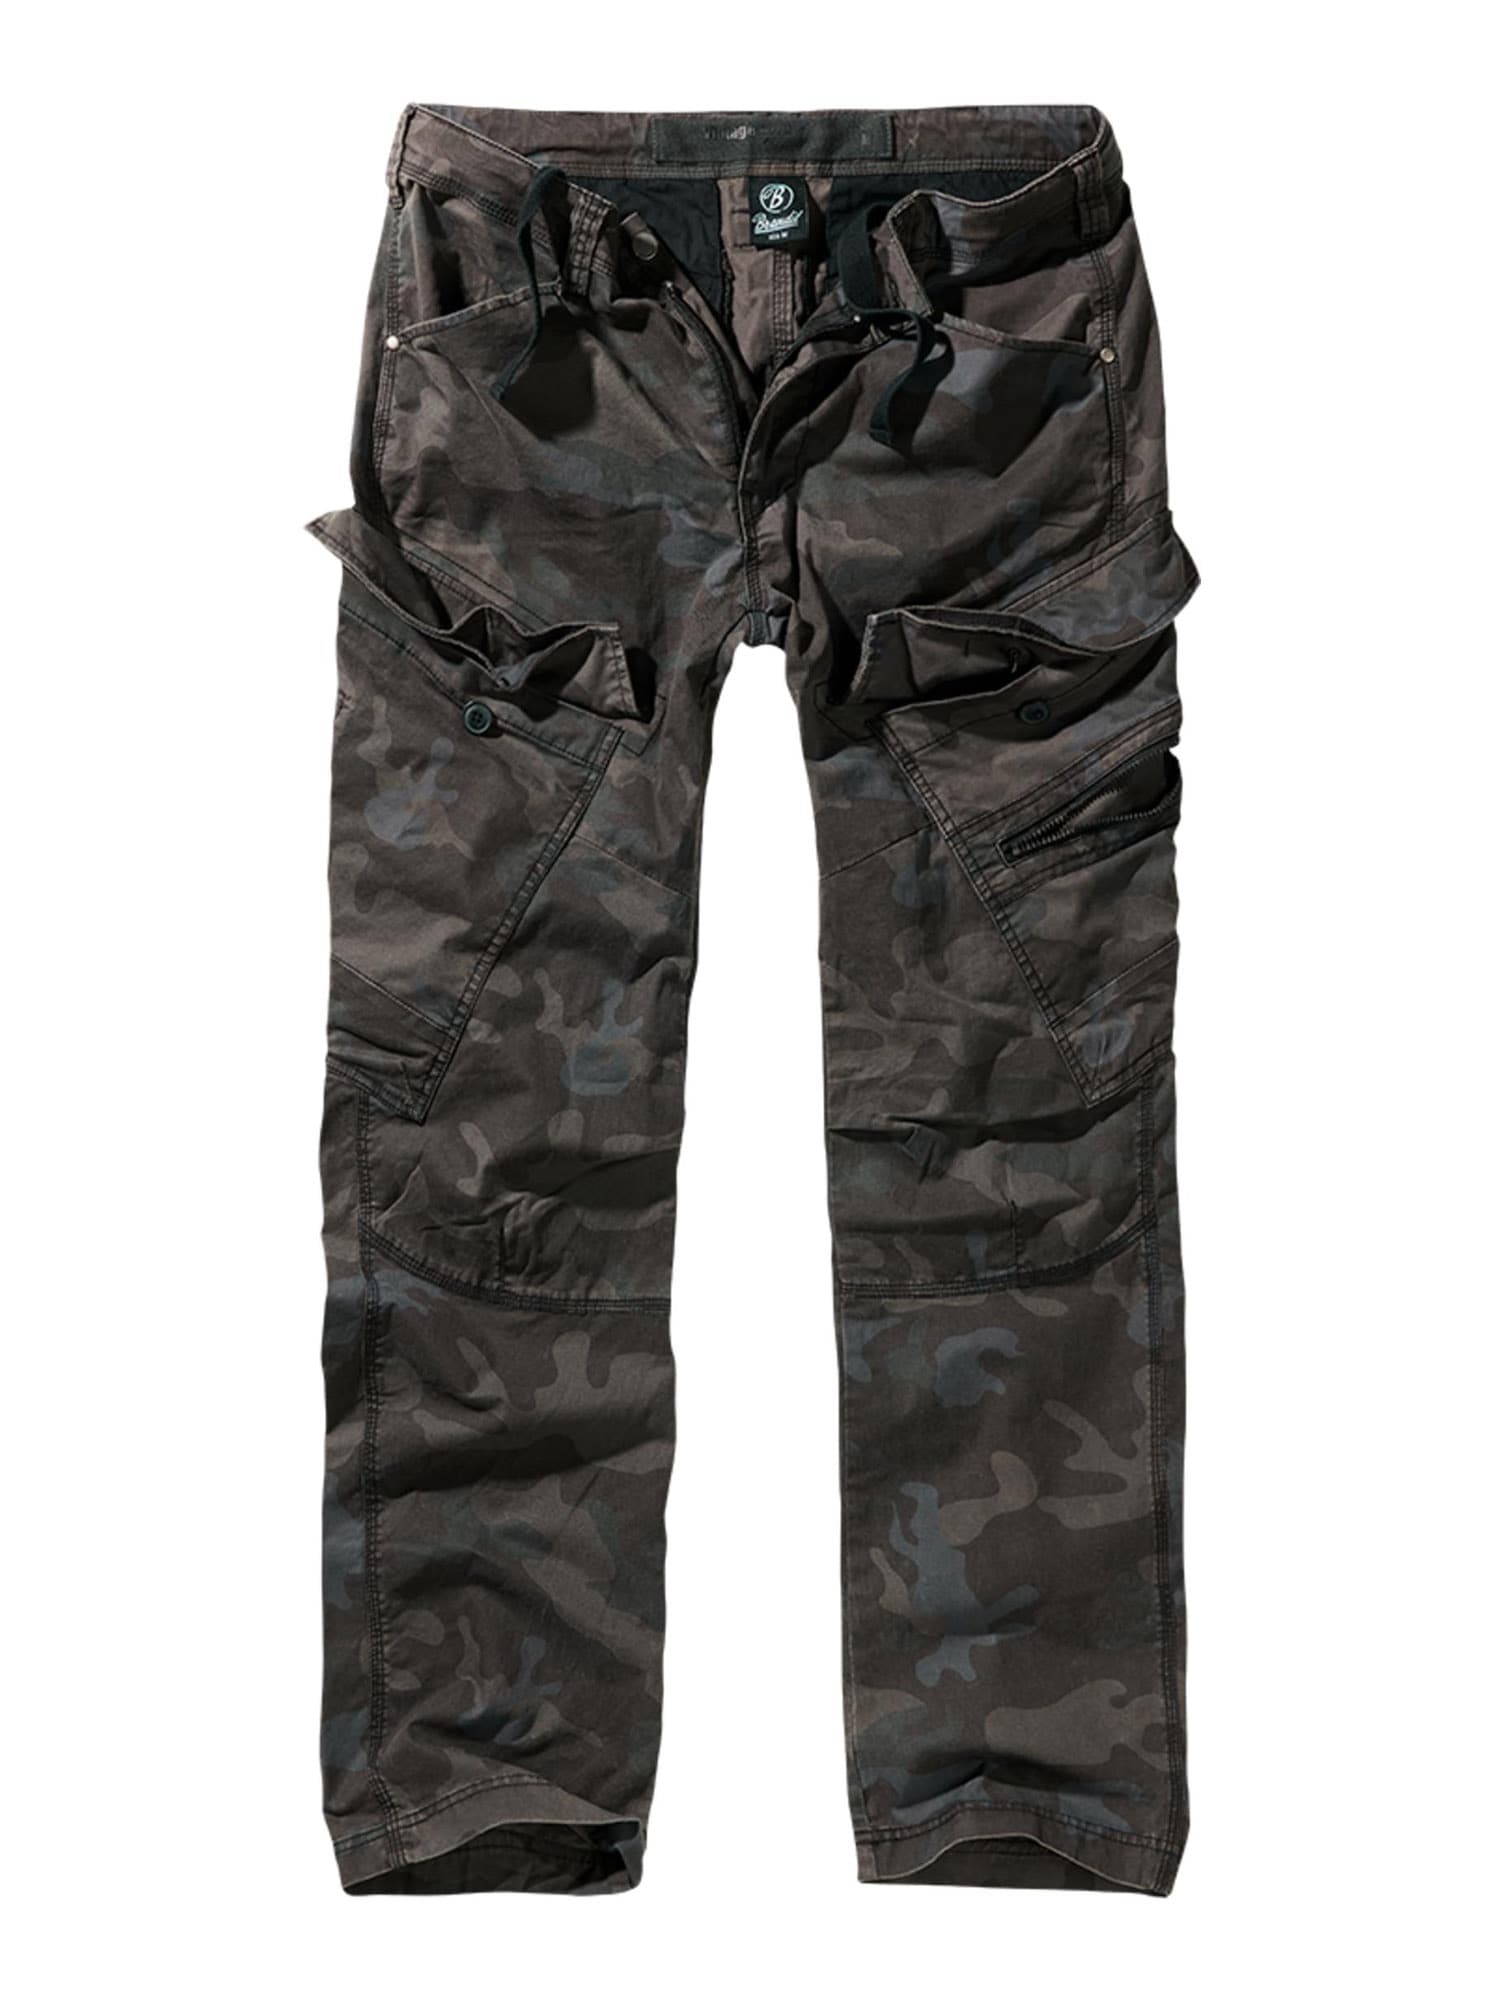 Brandit Cargo nadrágok  sötét barna / sötétszürke / brokát